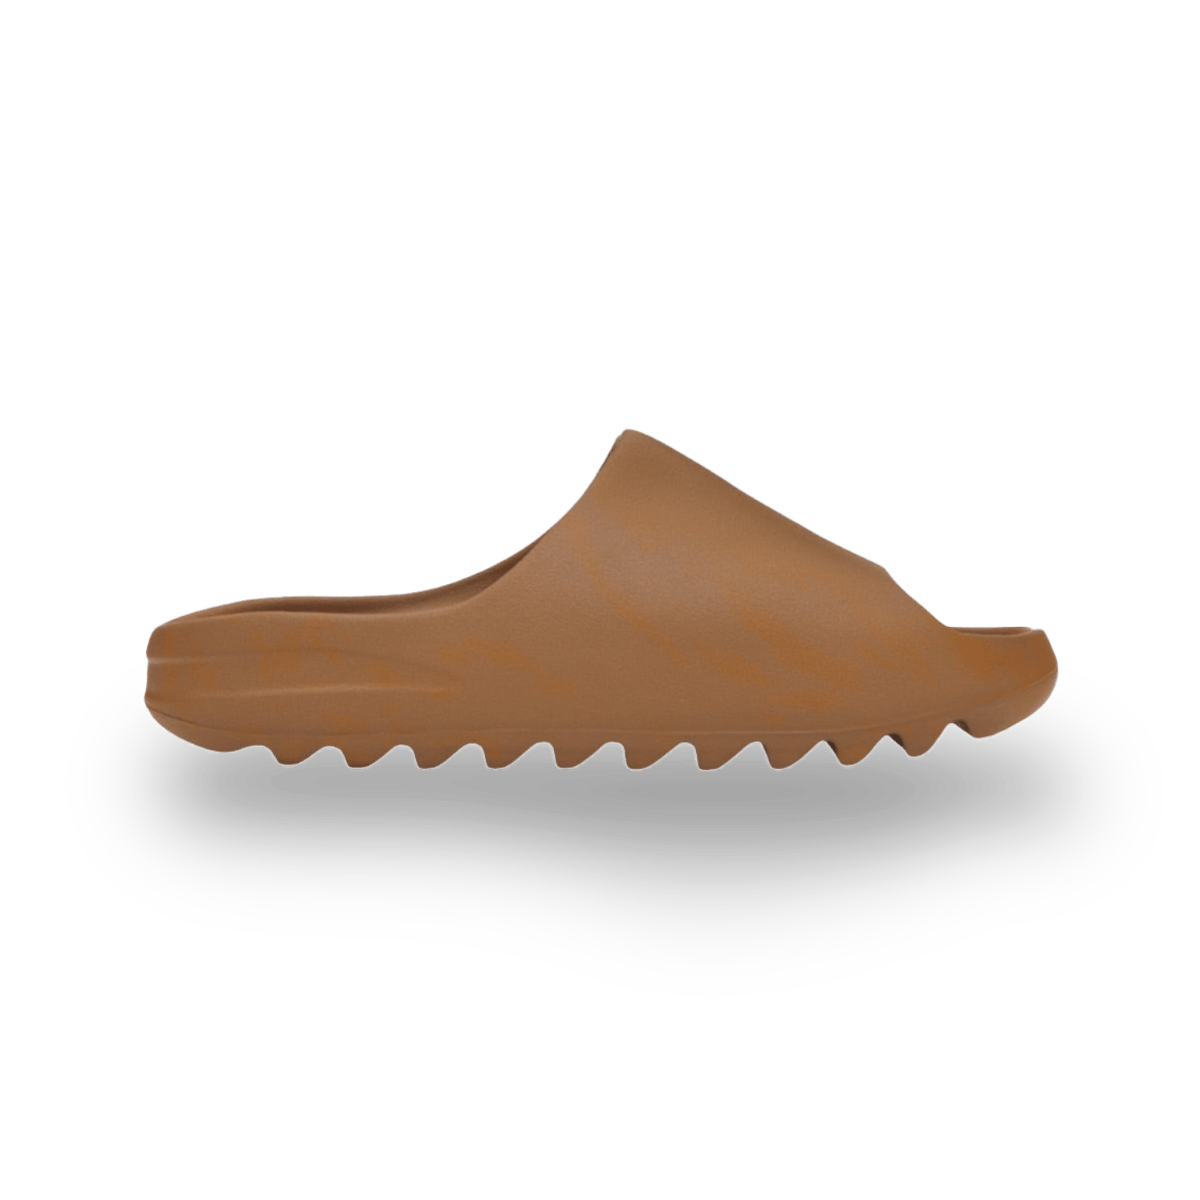 Yeezy Slide Flax - Shoes - Jawns on Fire Sneakers & Streetwear